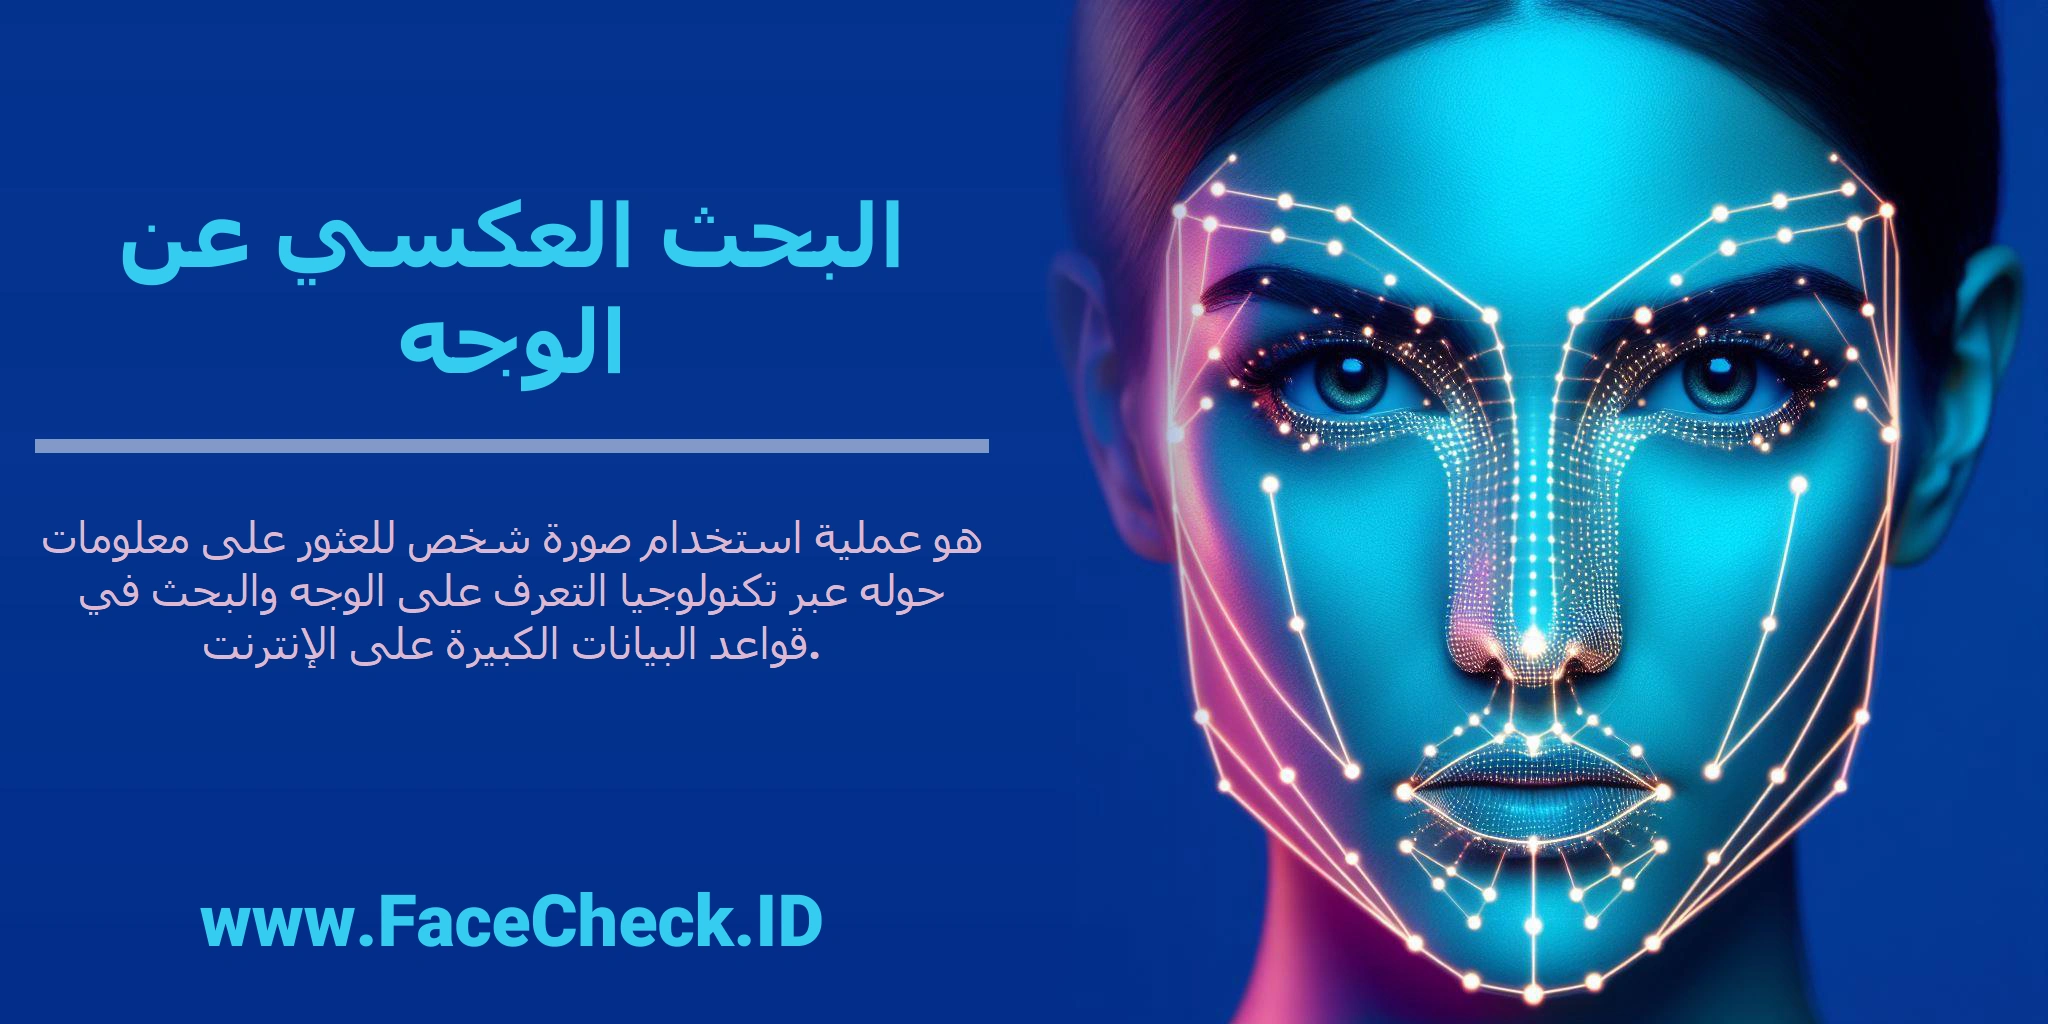 <b>البحث العكسي عن الوجه</b> هو عملية استخدام صورة شخص للعثور على معلومات حوله عبر تكنولوجيا التعرف على الوجه والبحث في قواعد البيانات الكبيرة على الإنترنت.